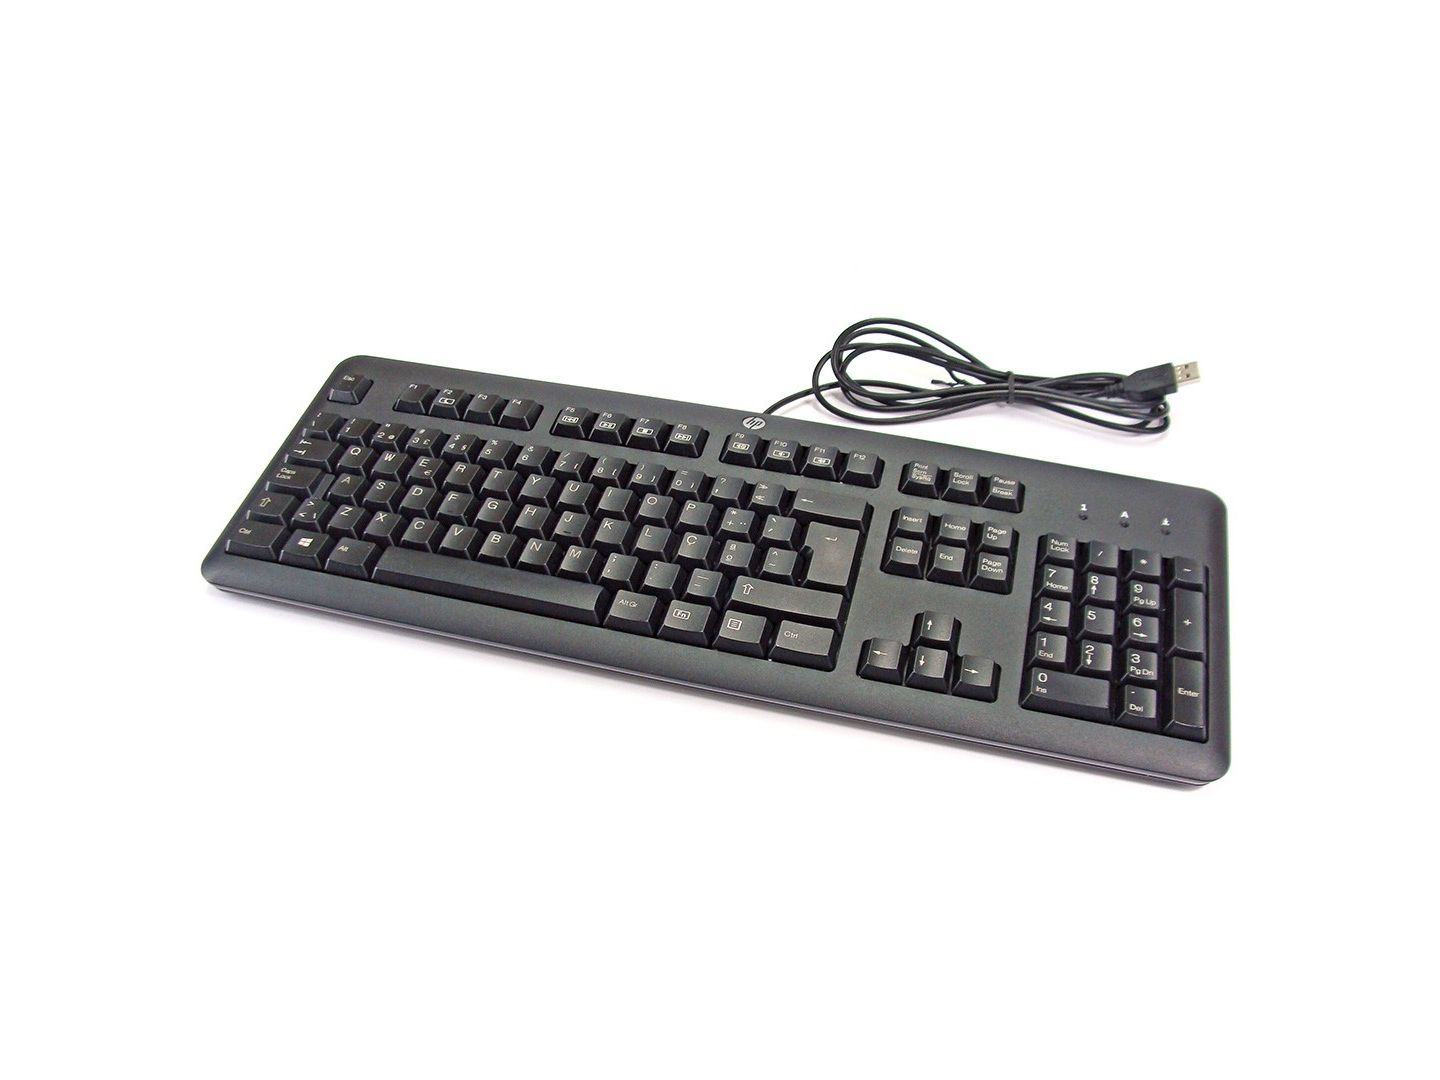 Algumas teclas no teclado não funcionam mais - Comunidade de Suporte HP -  713833